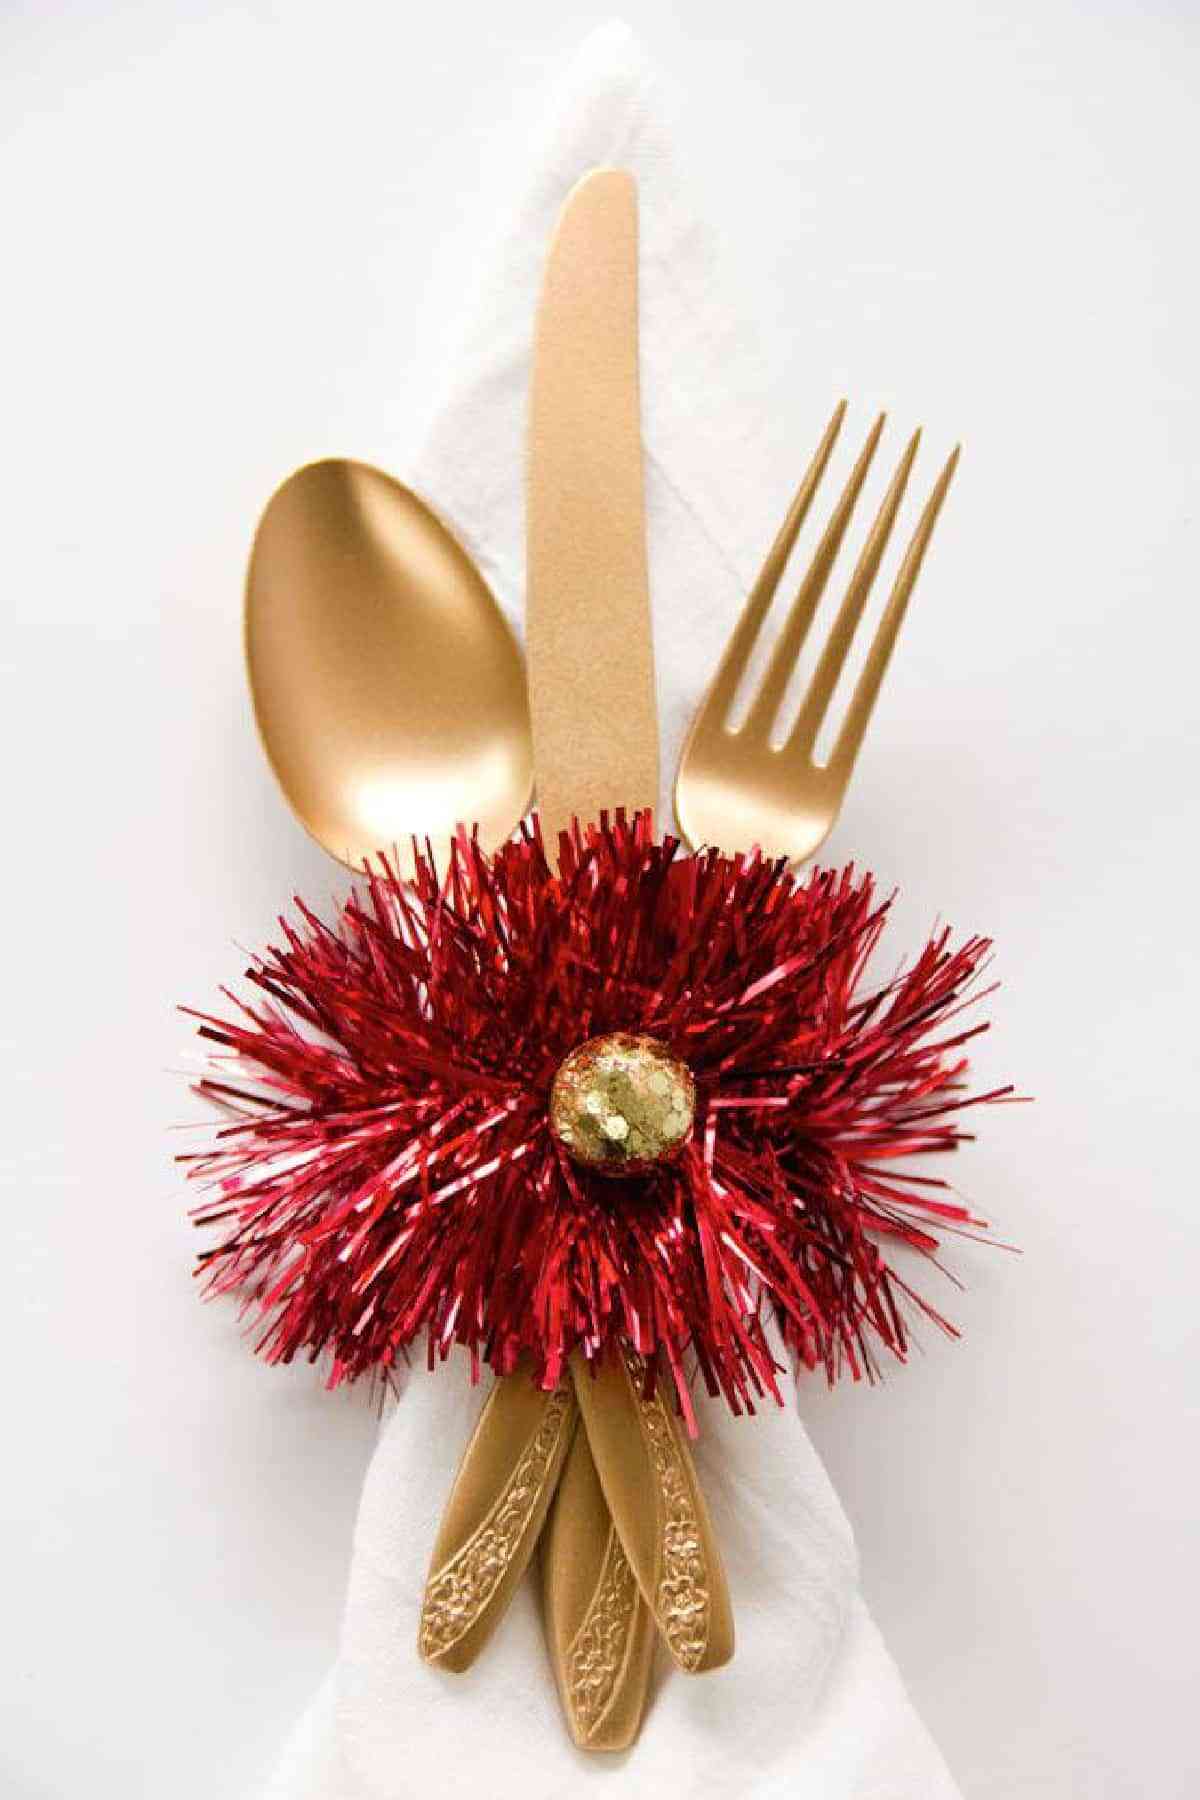 Servilleteros navideños: DIY para lucir en la mesa de Navidad 4